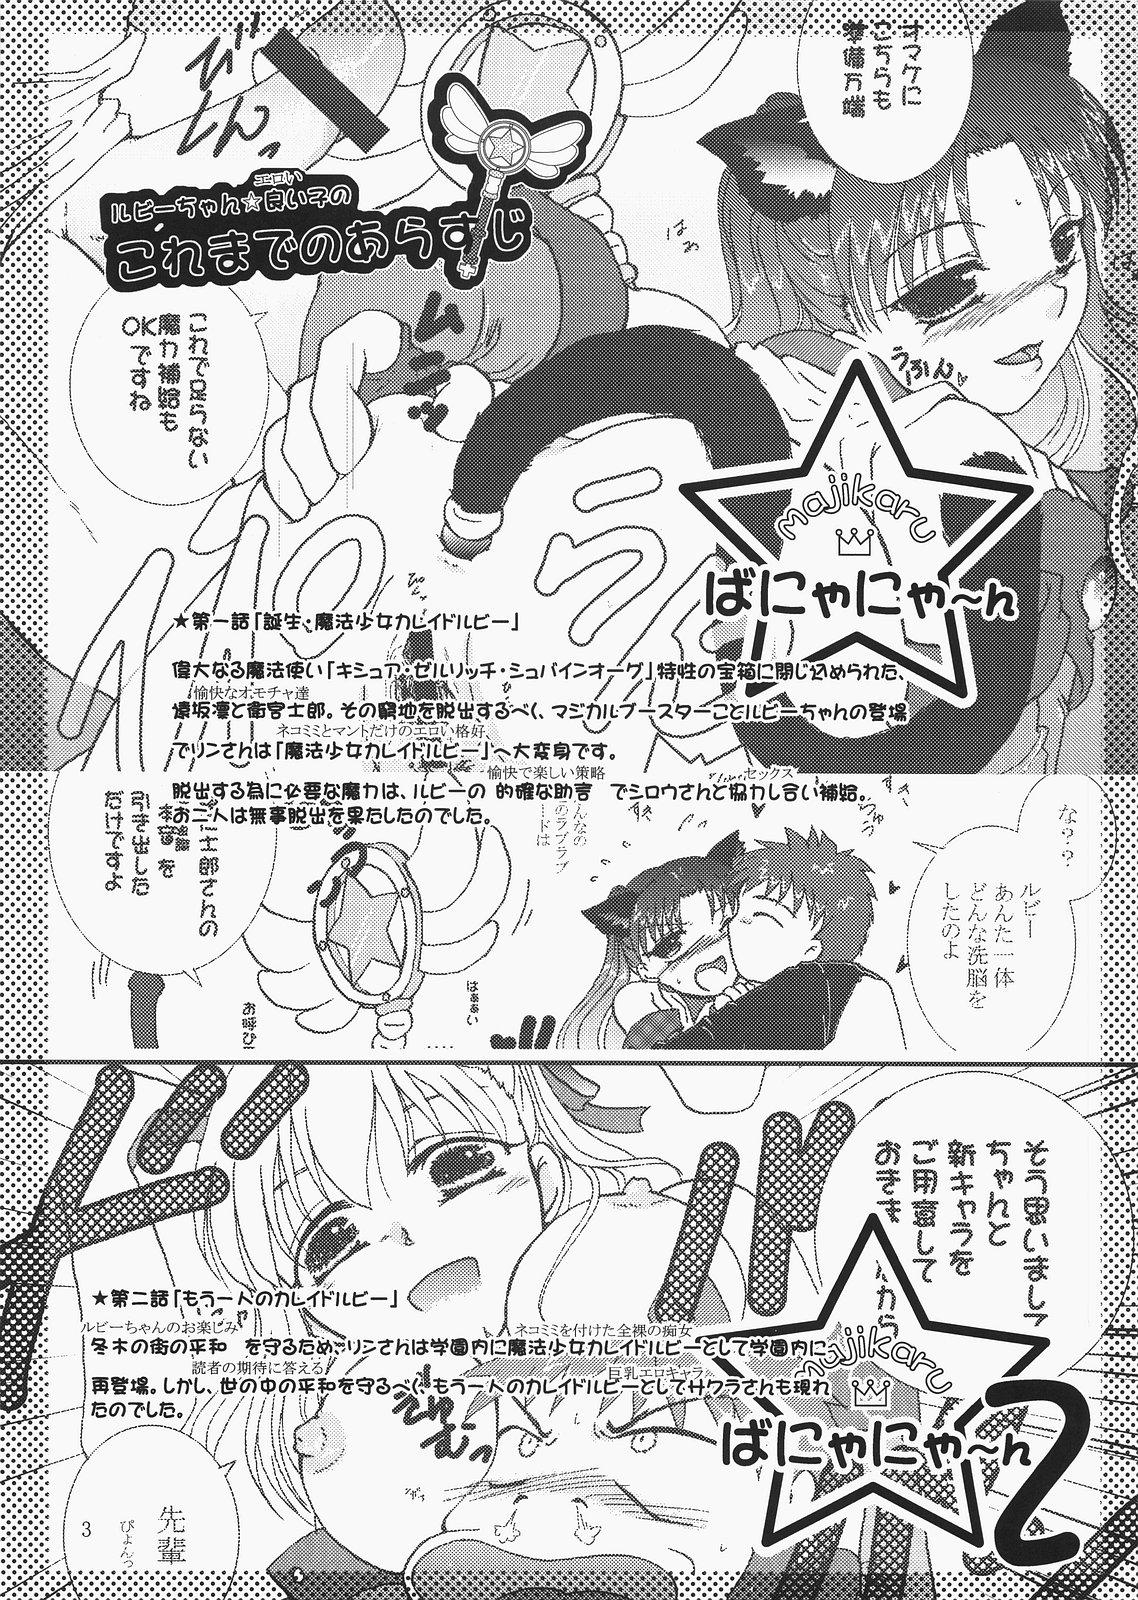 Japan Magical Bunny Nyan 4 - Fate hollow ataraxia Cfnm - Page 2